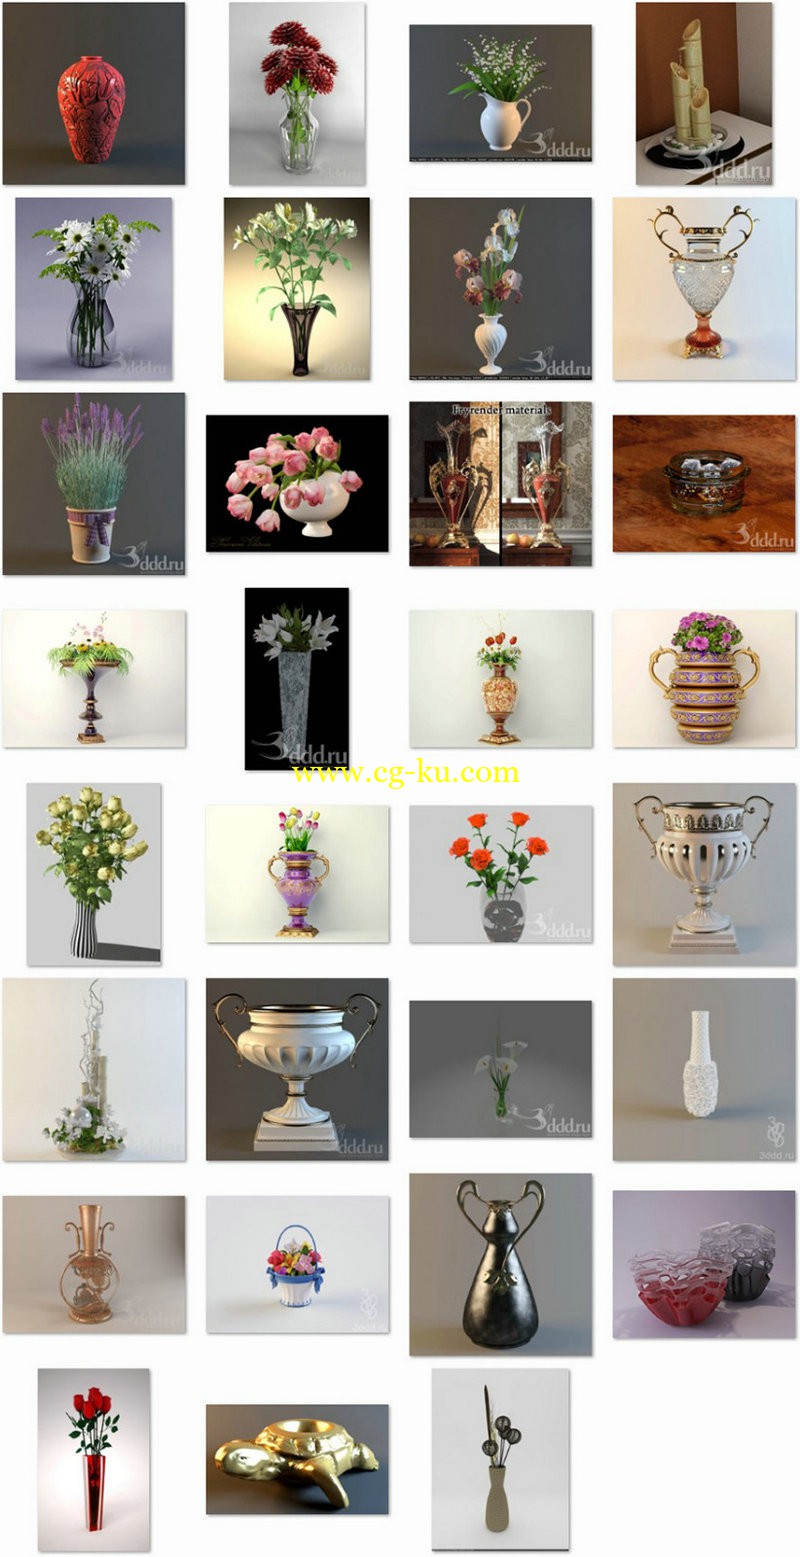 3ddd - Vases pack 1的图片1